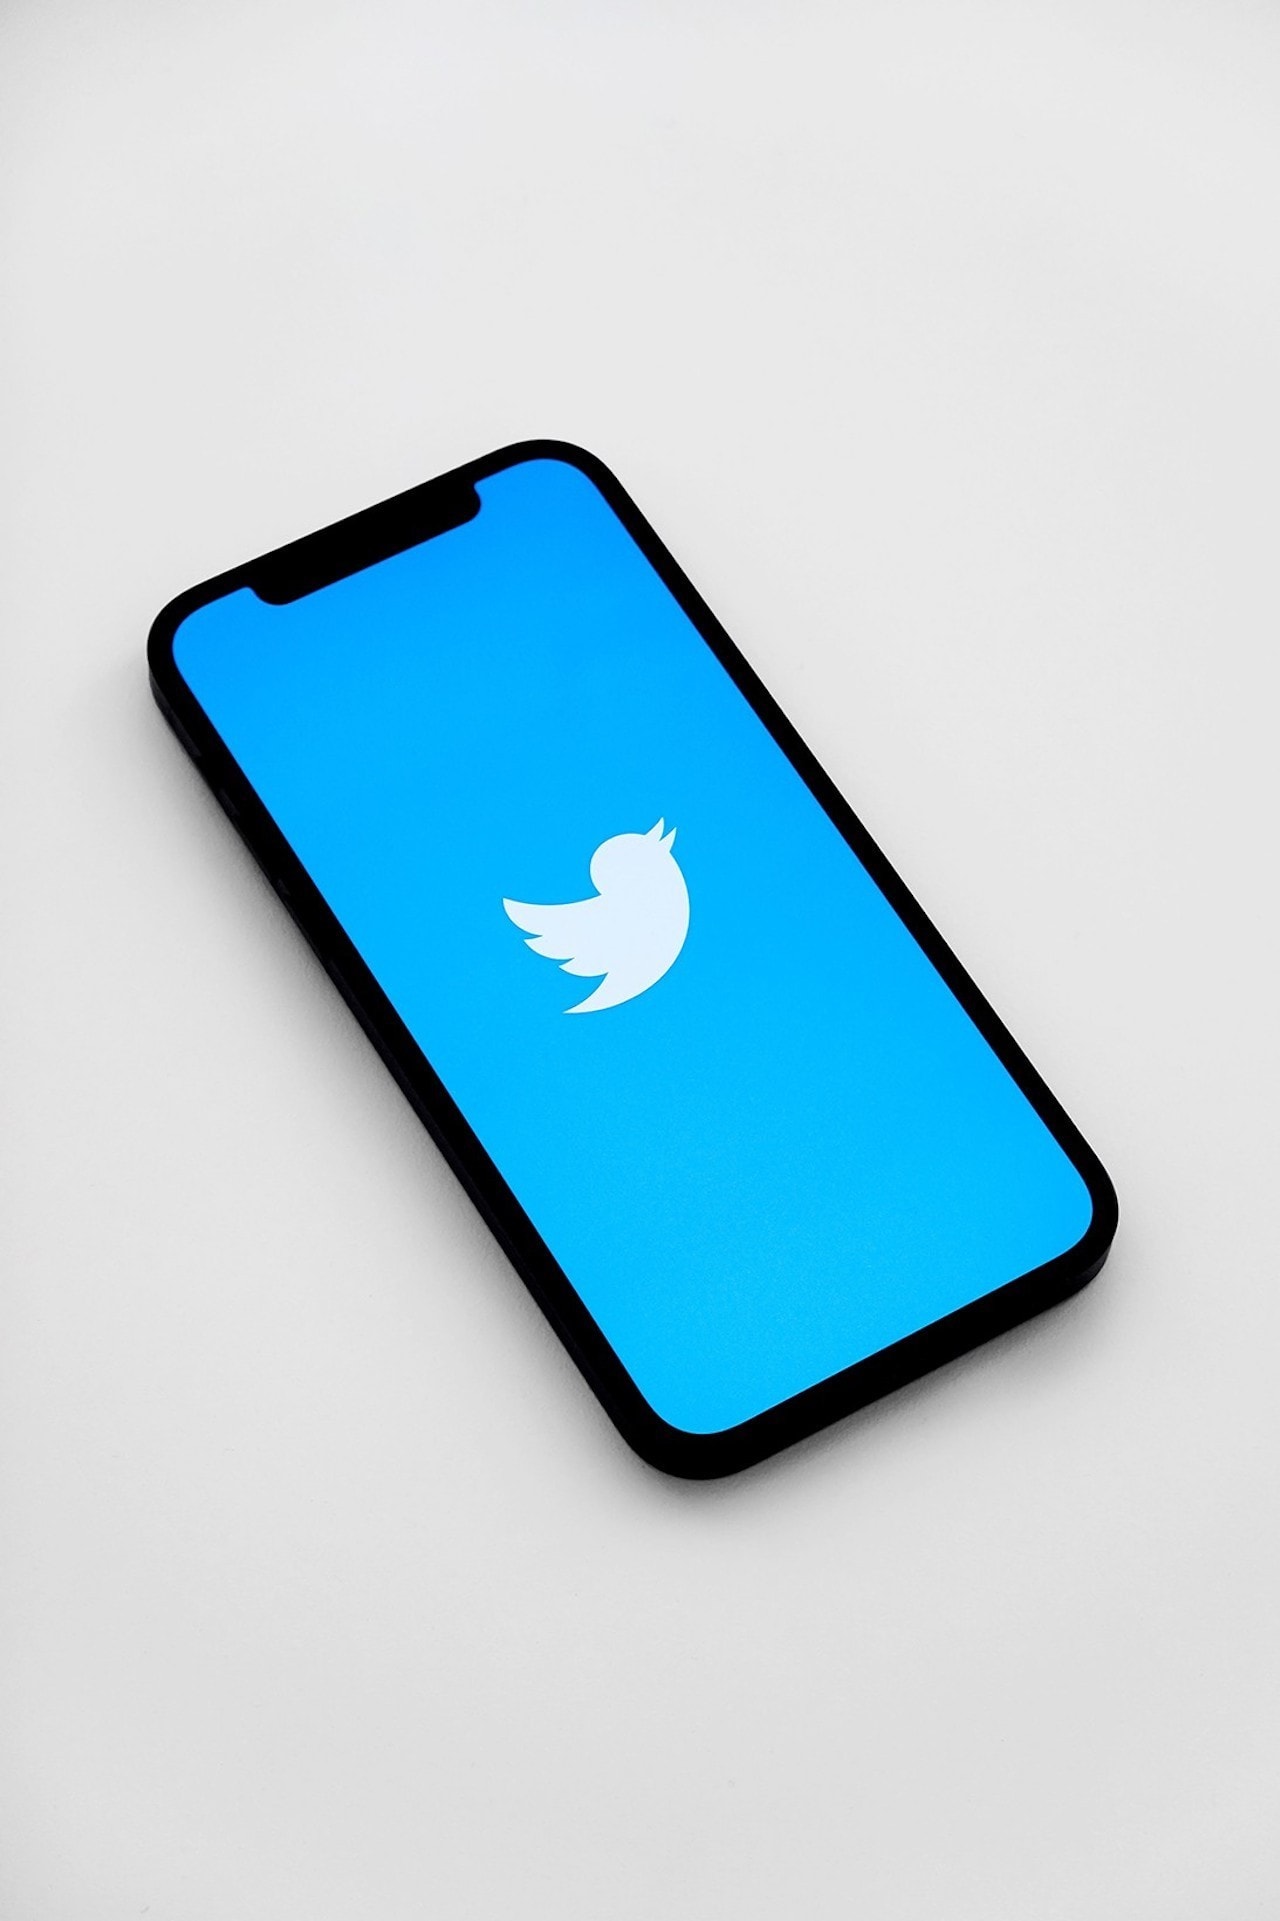 twitter blue 4,000 character tweet limit social media technology elon musk 